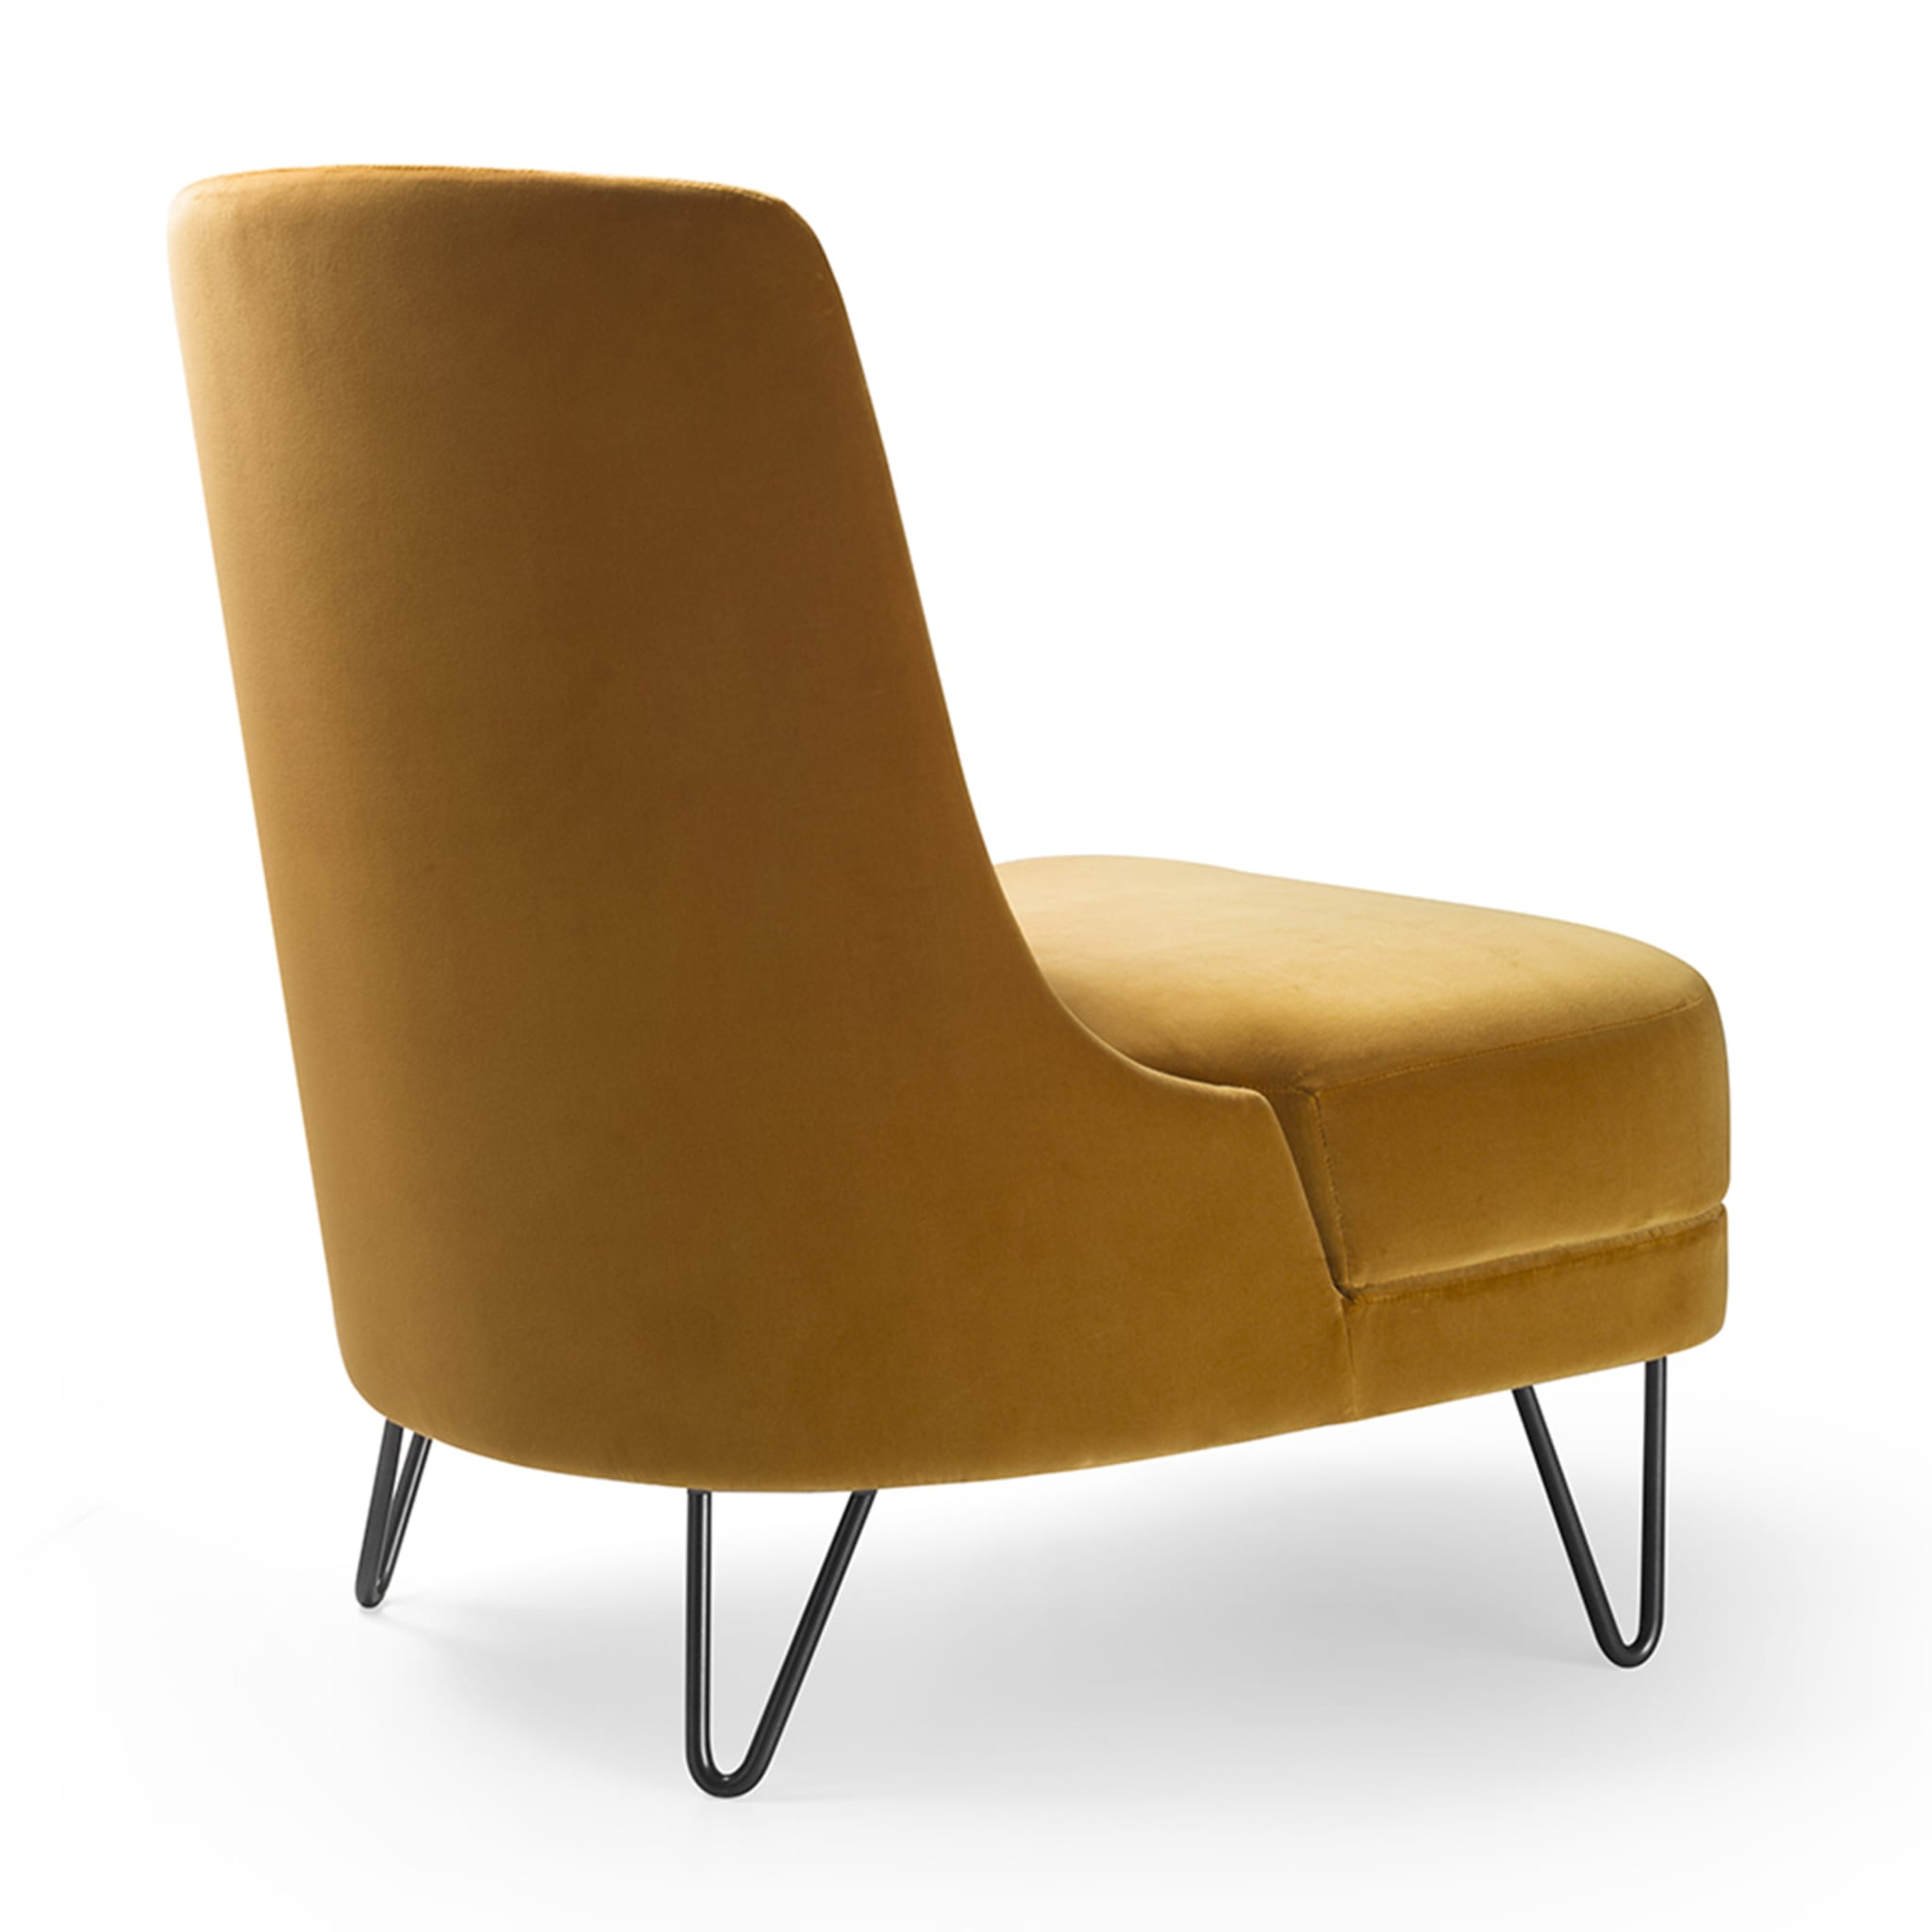 Chris Saffron-Yellow Lounge Chair - Alternative view 2